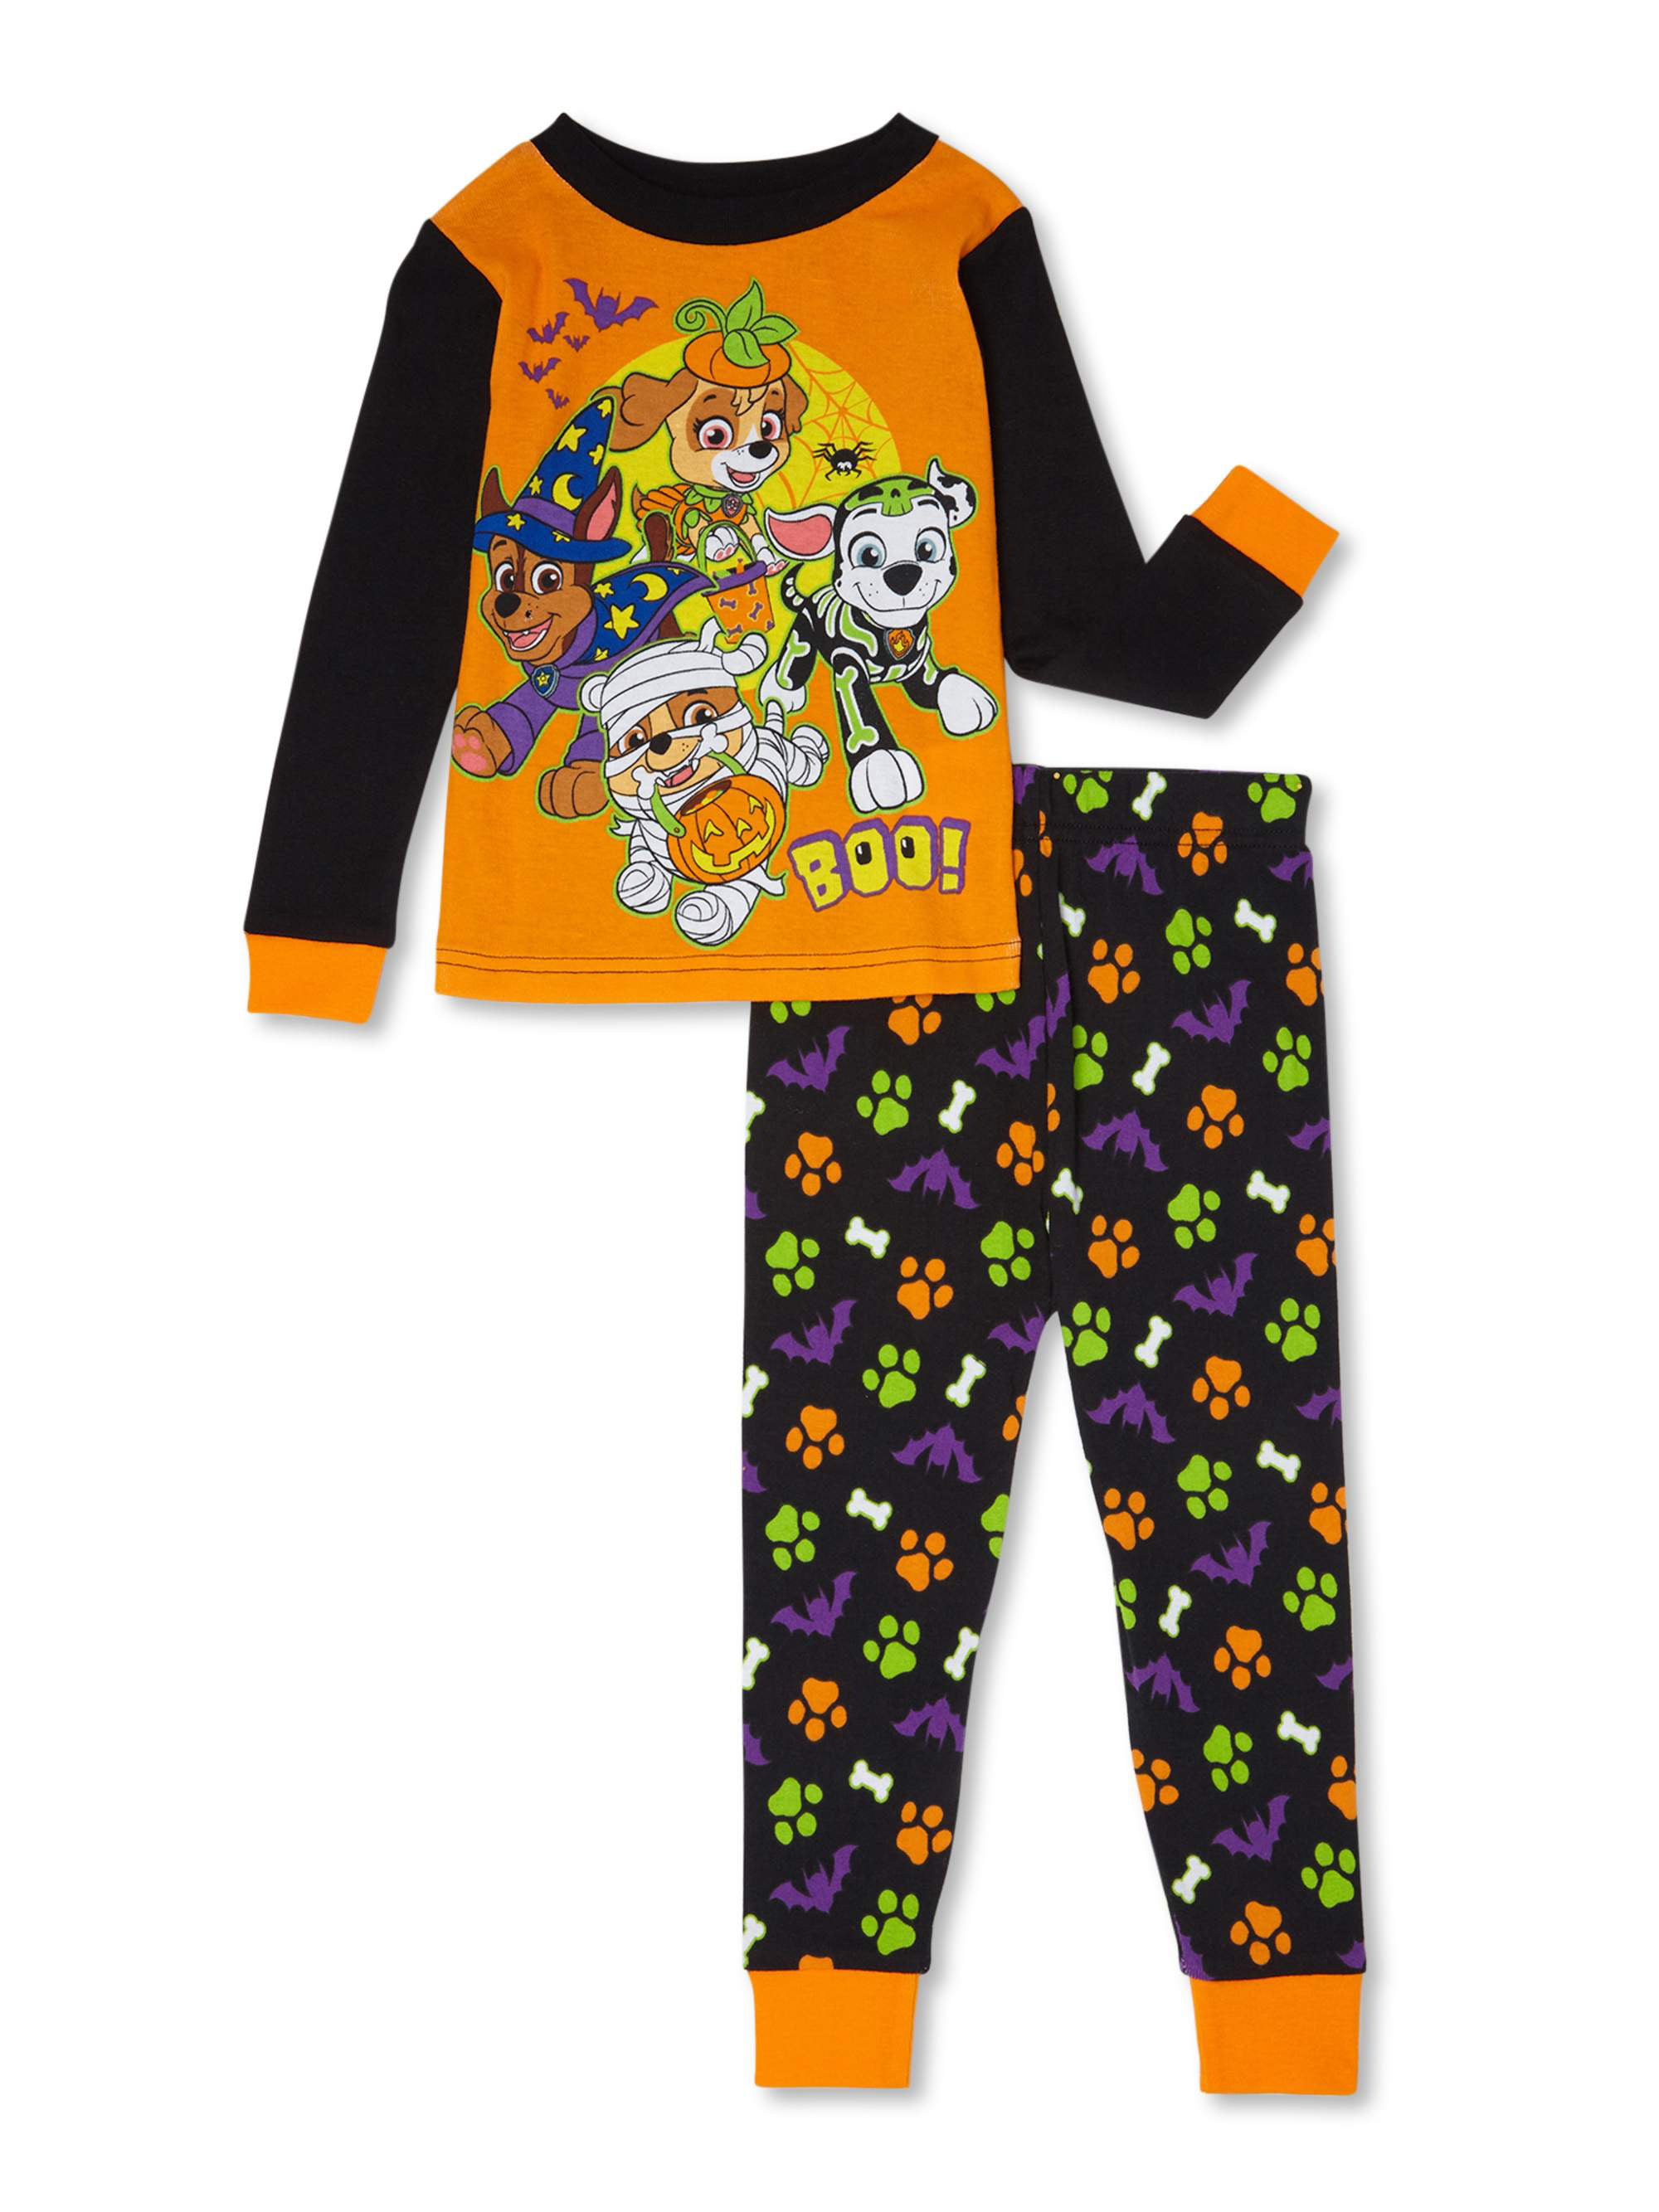 Paw Patrol Toddler Boys Snug Fit Cotton Long Sleeve Pajamas, 2-Piece PJ ...